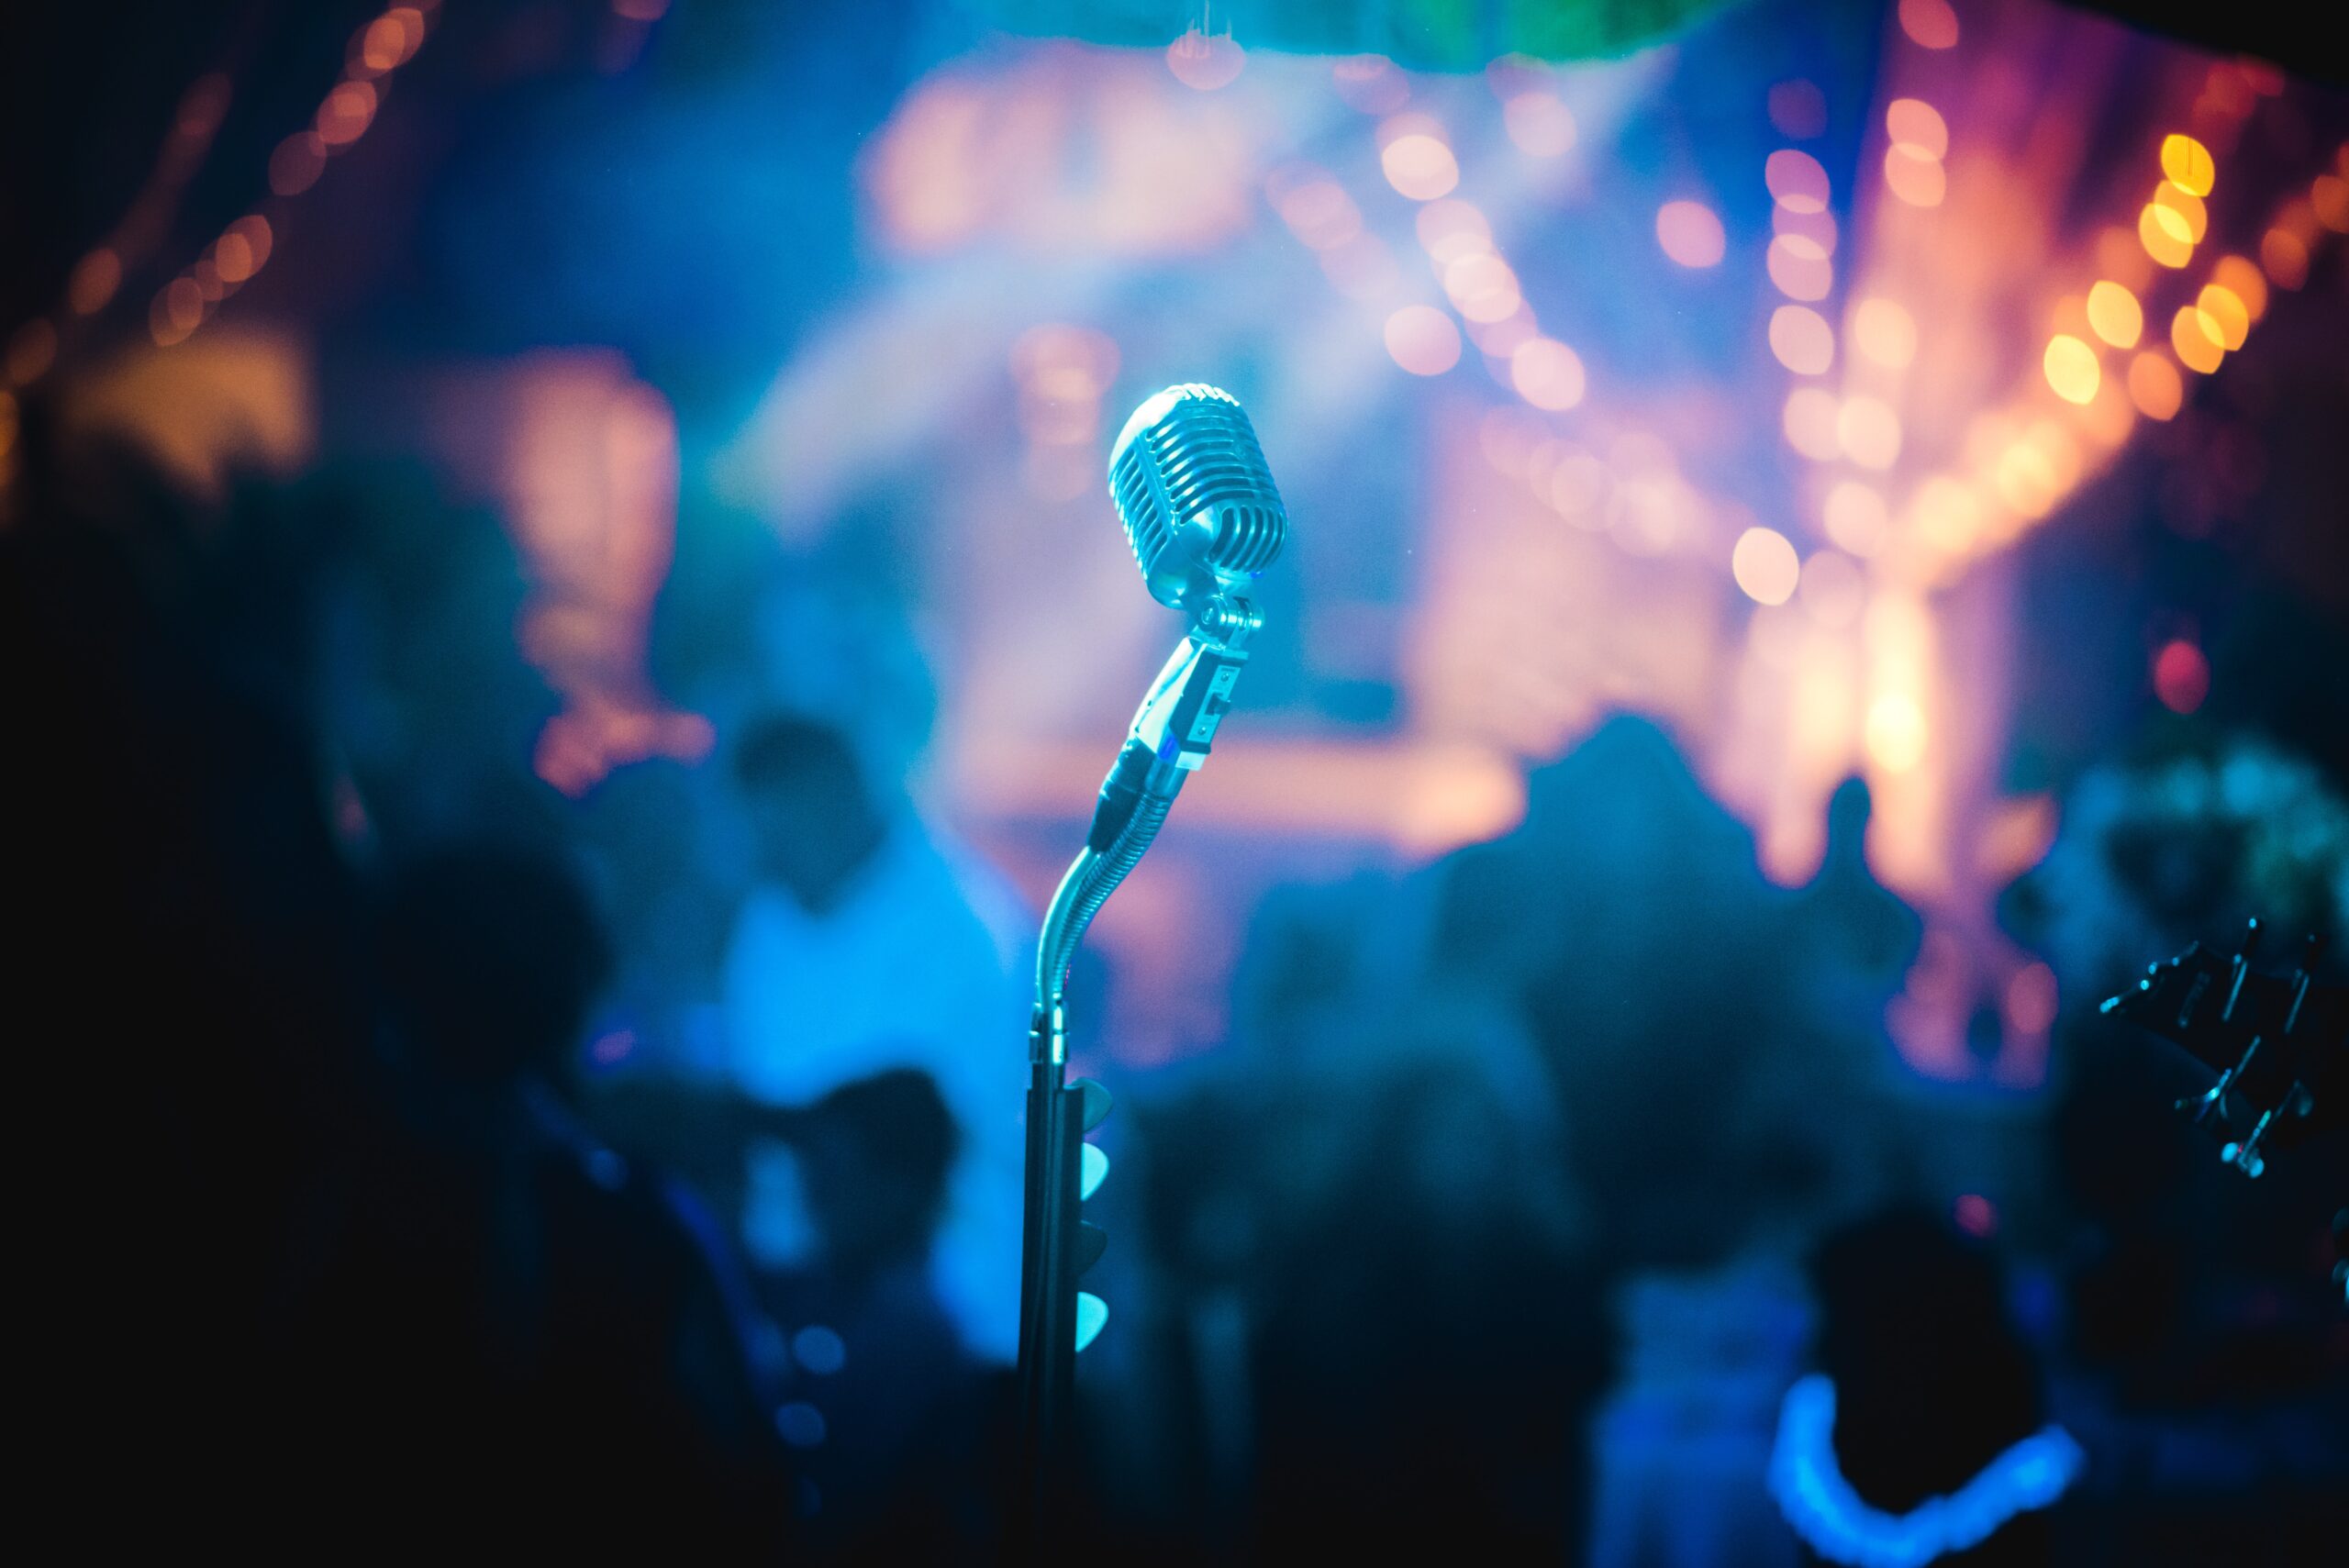 Slika mikrofona i nocnog svetla u pozadini, kao na nekom koncertu ili na svirci